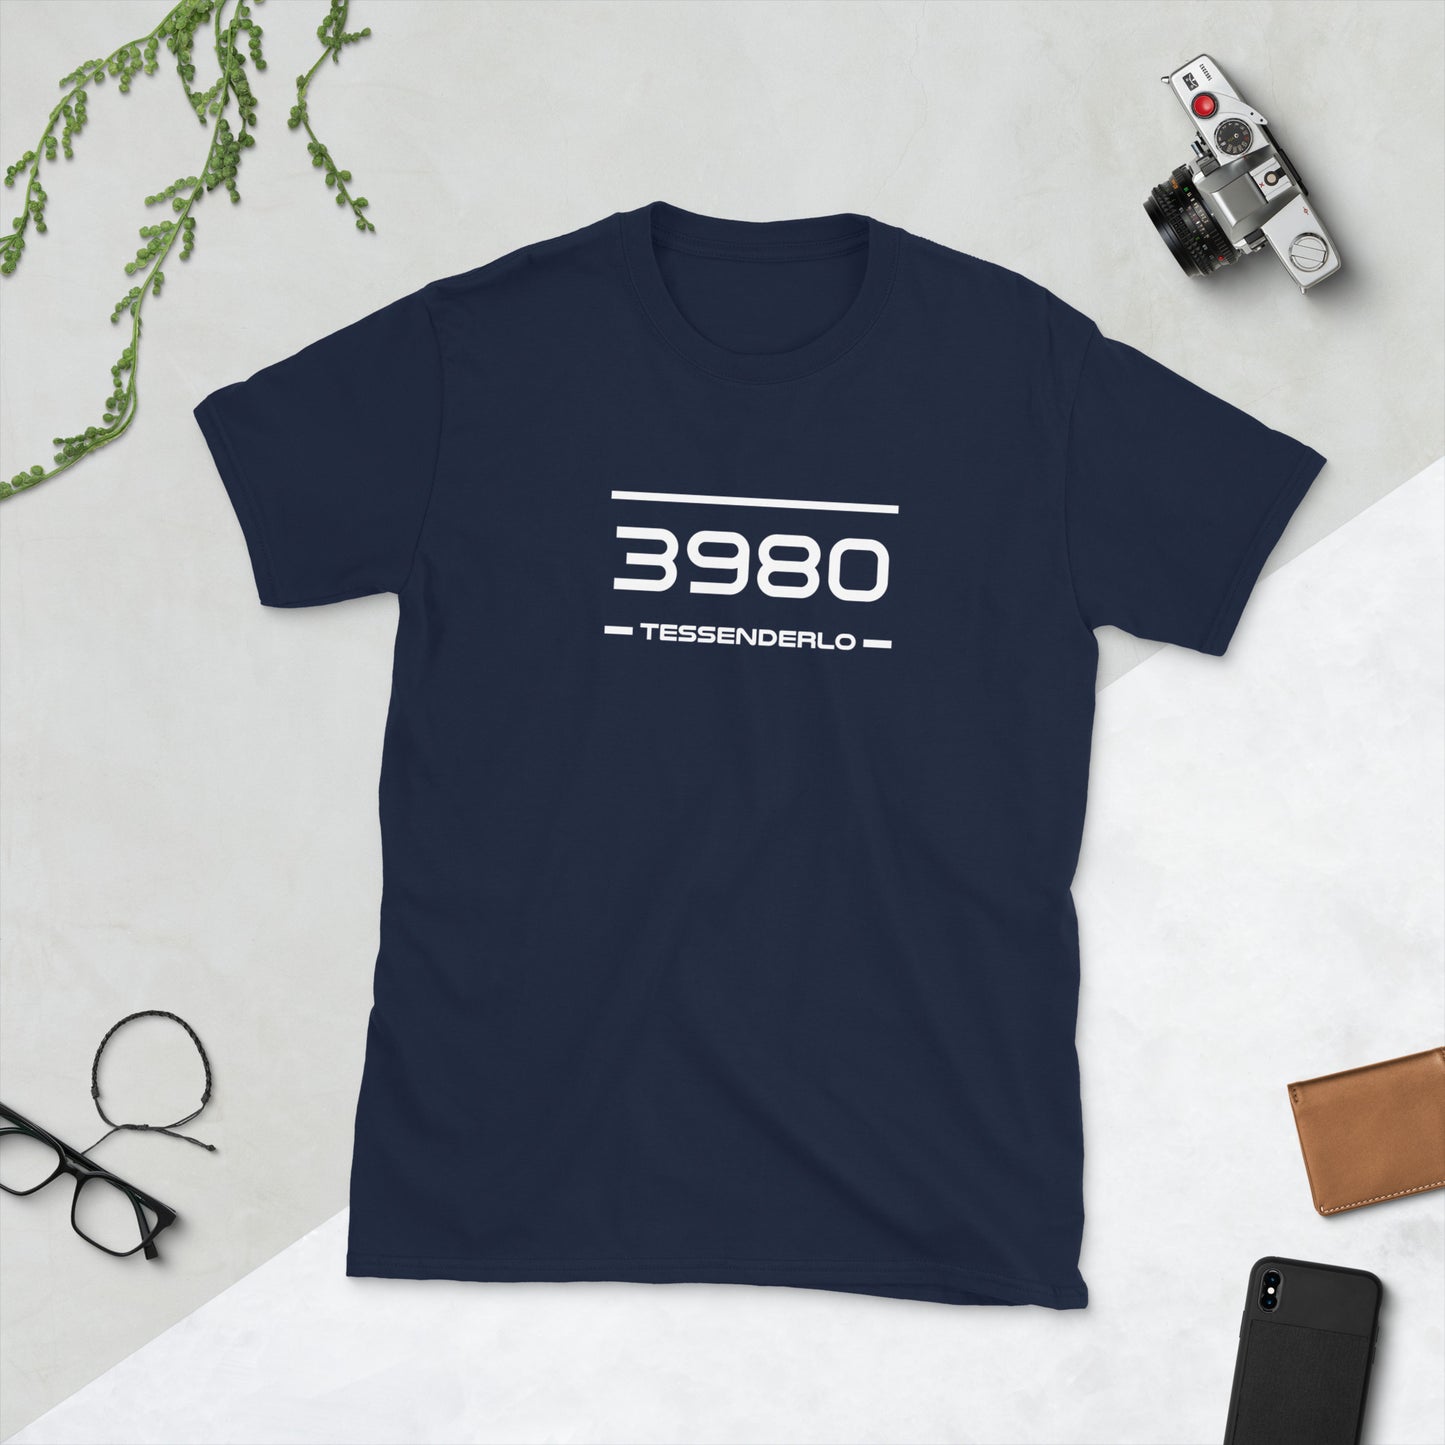 Tshirt - 3980 - Tessenderlo